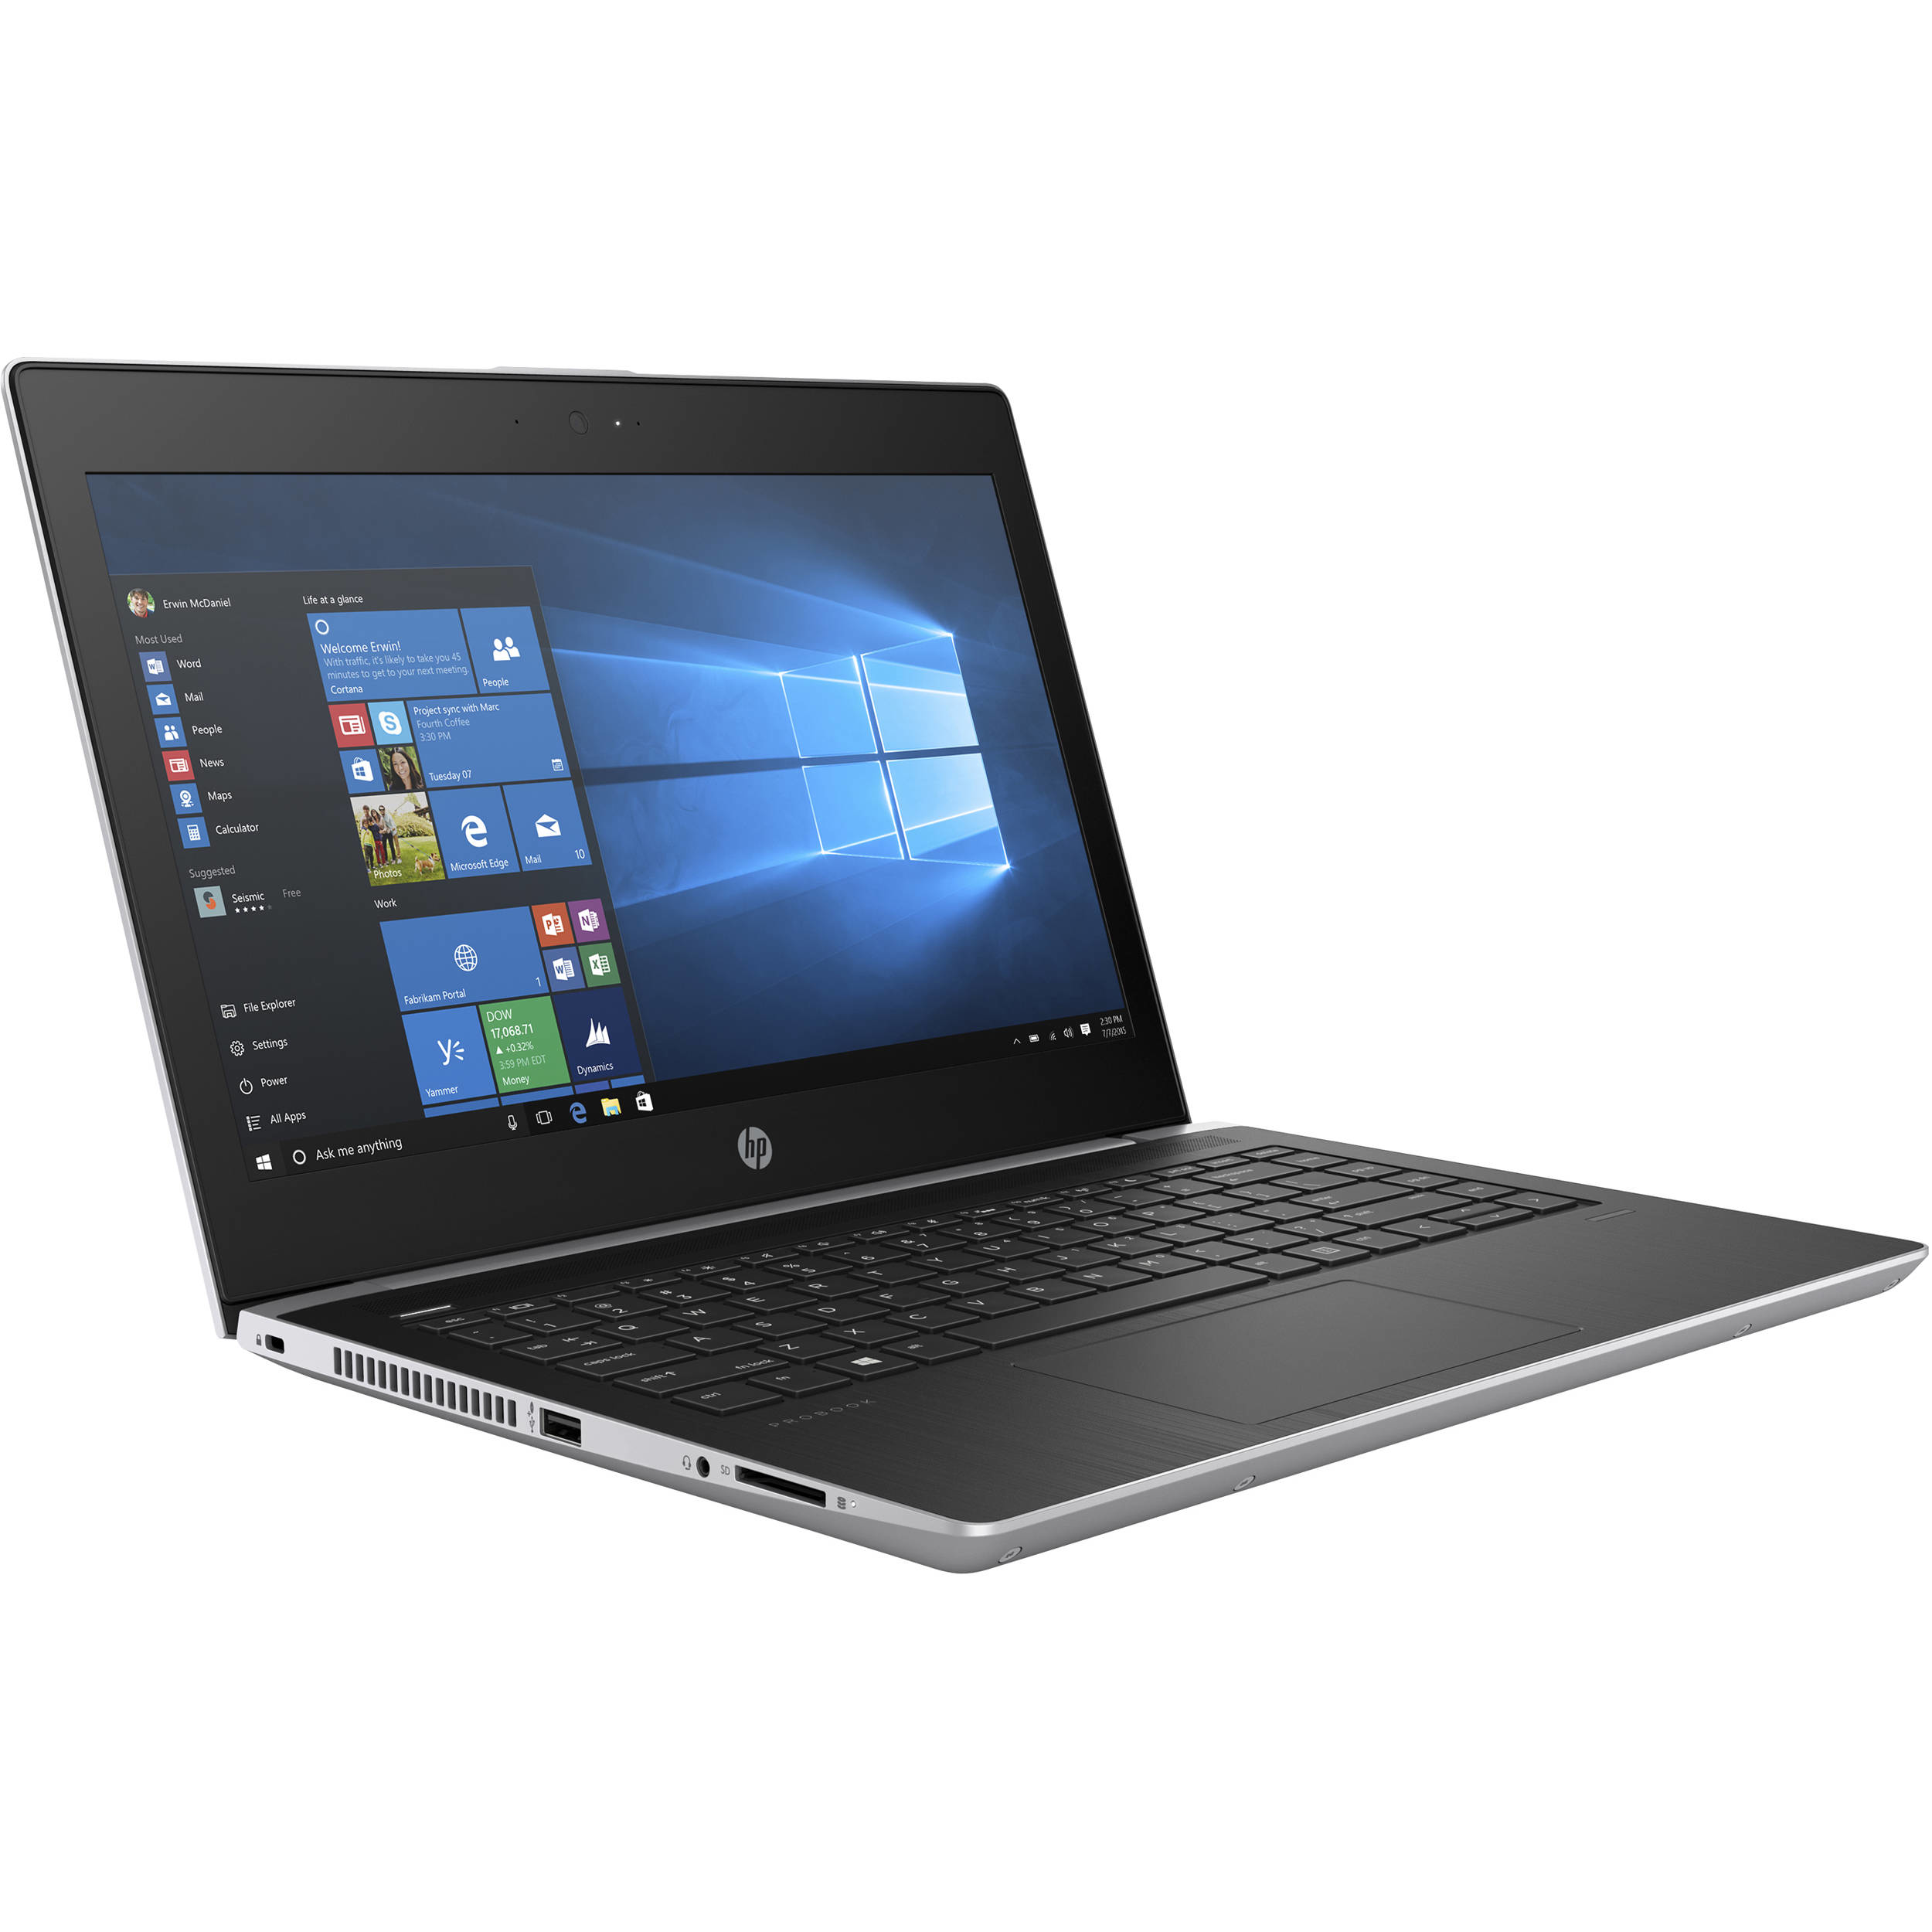 HP Probook 430 G5 - Laptopid.ee